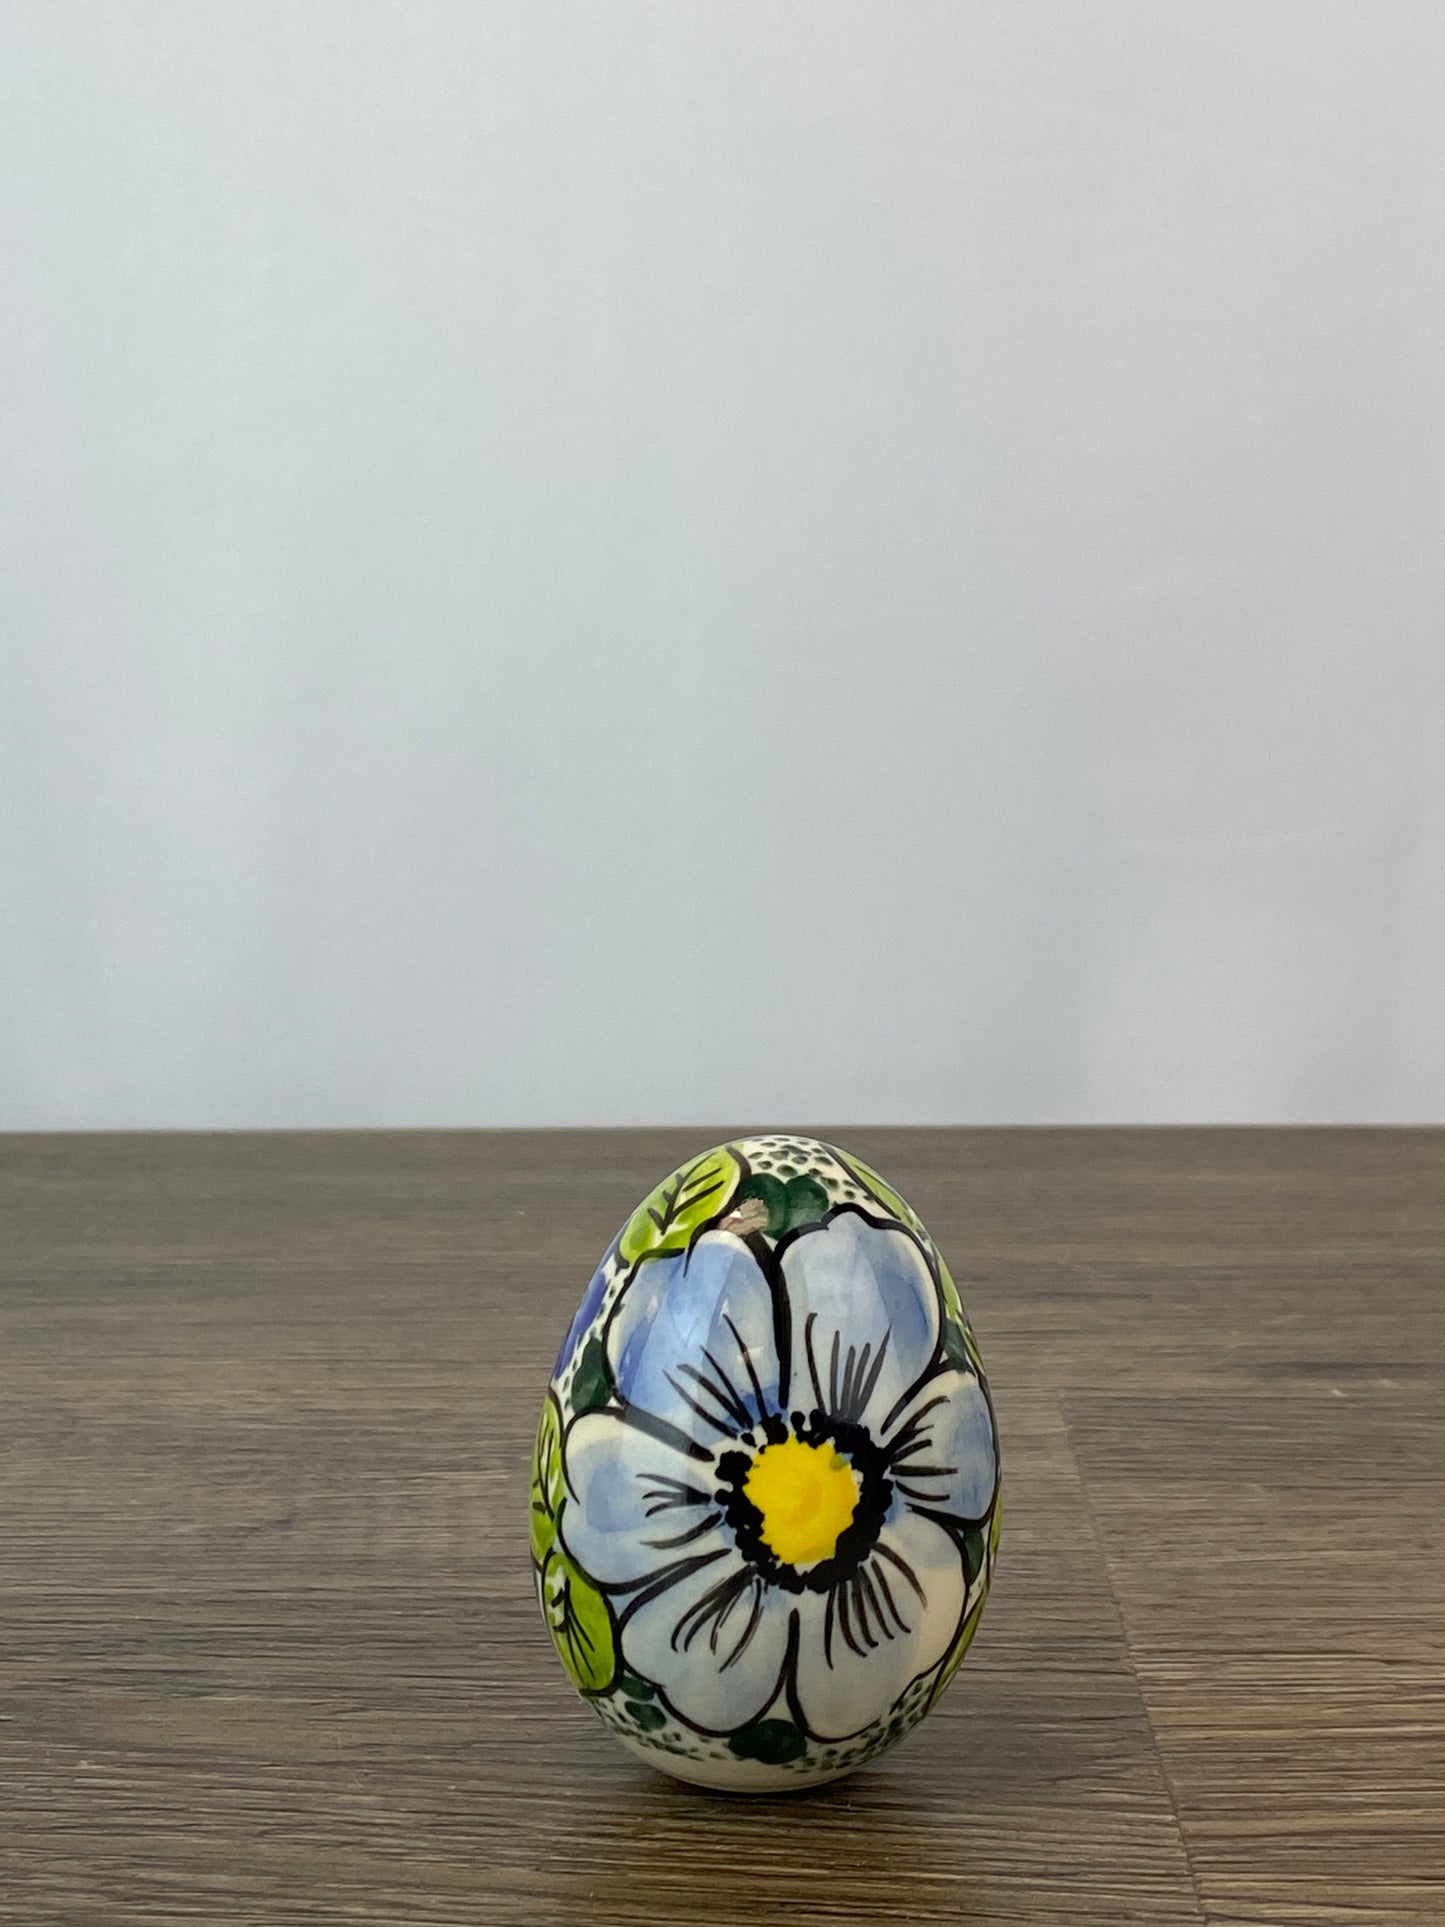 Vena Large Ceramic Easter Egg - Shape V037 - Pattern A524